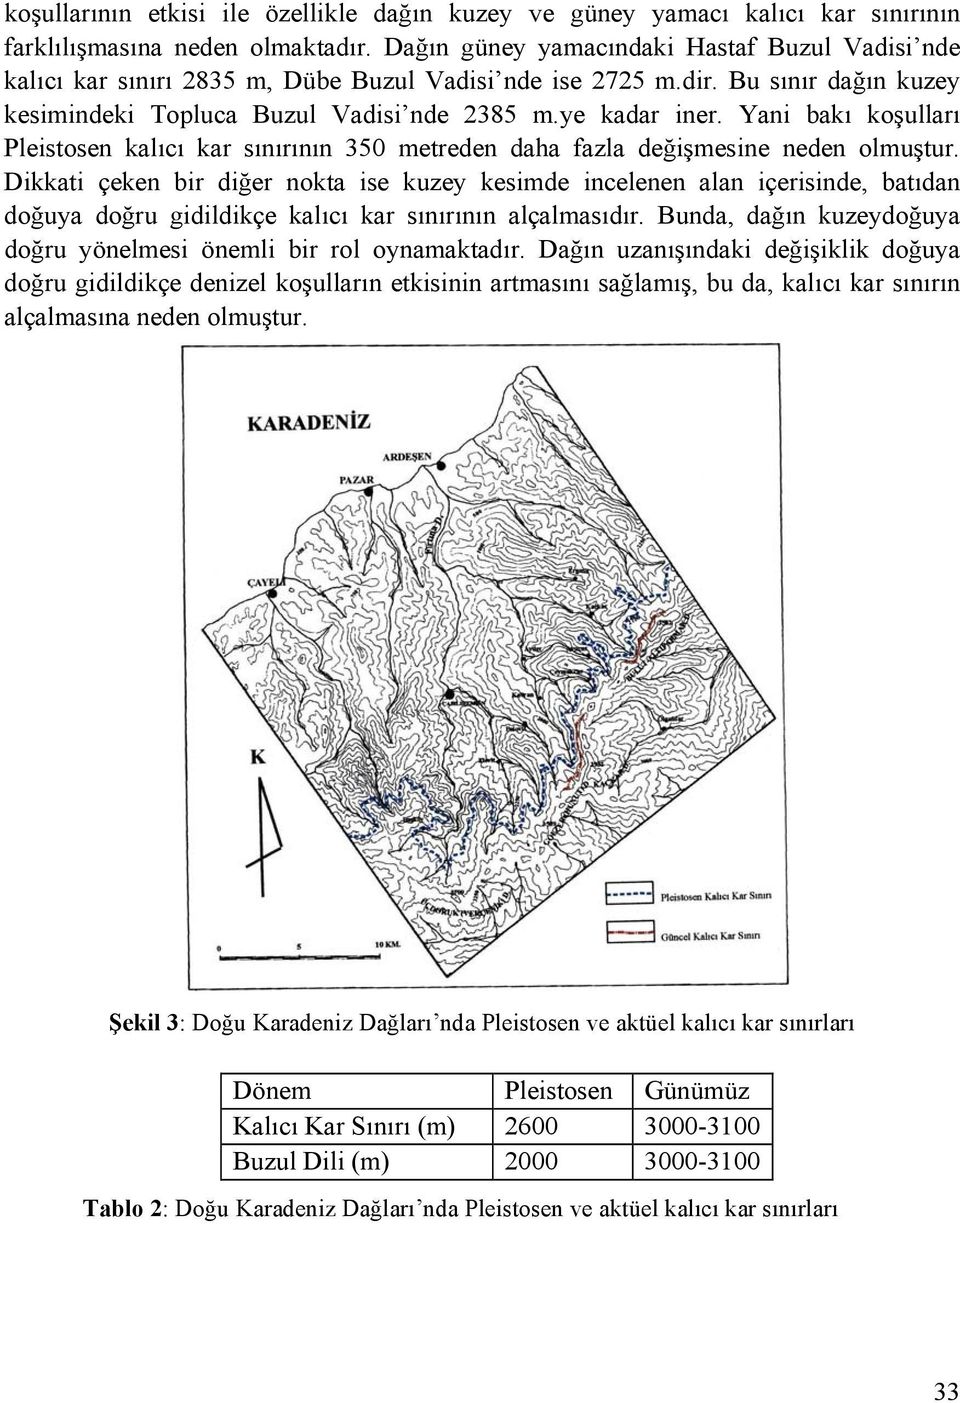 Yani bakı koşulları Pleistosen kalıcı kar sınırının 350 metreden daha fazla değişmesine neden olmuştur.